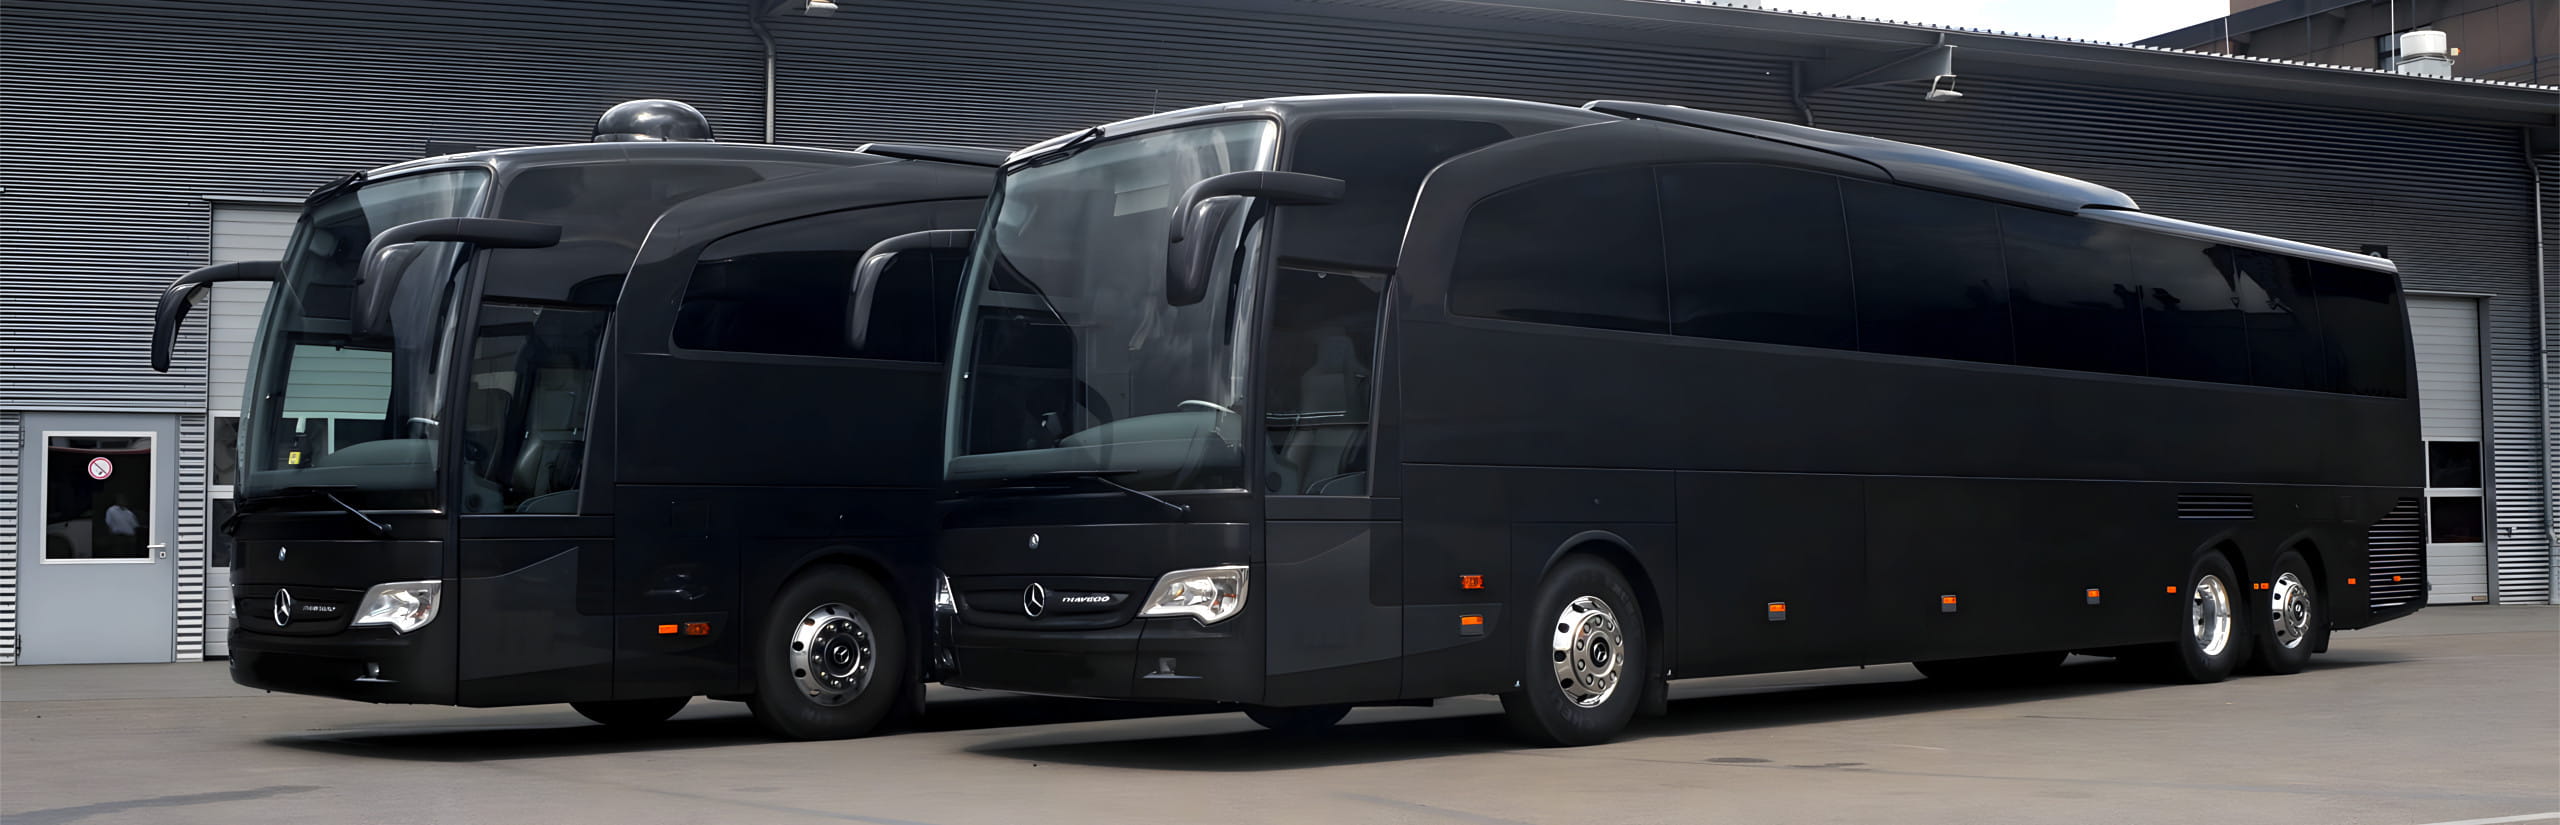 Luxusbusse – VIP Busse, VIP Liner mieten